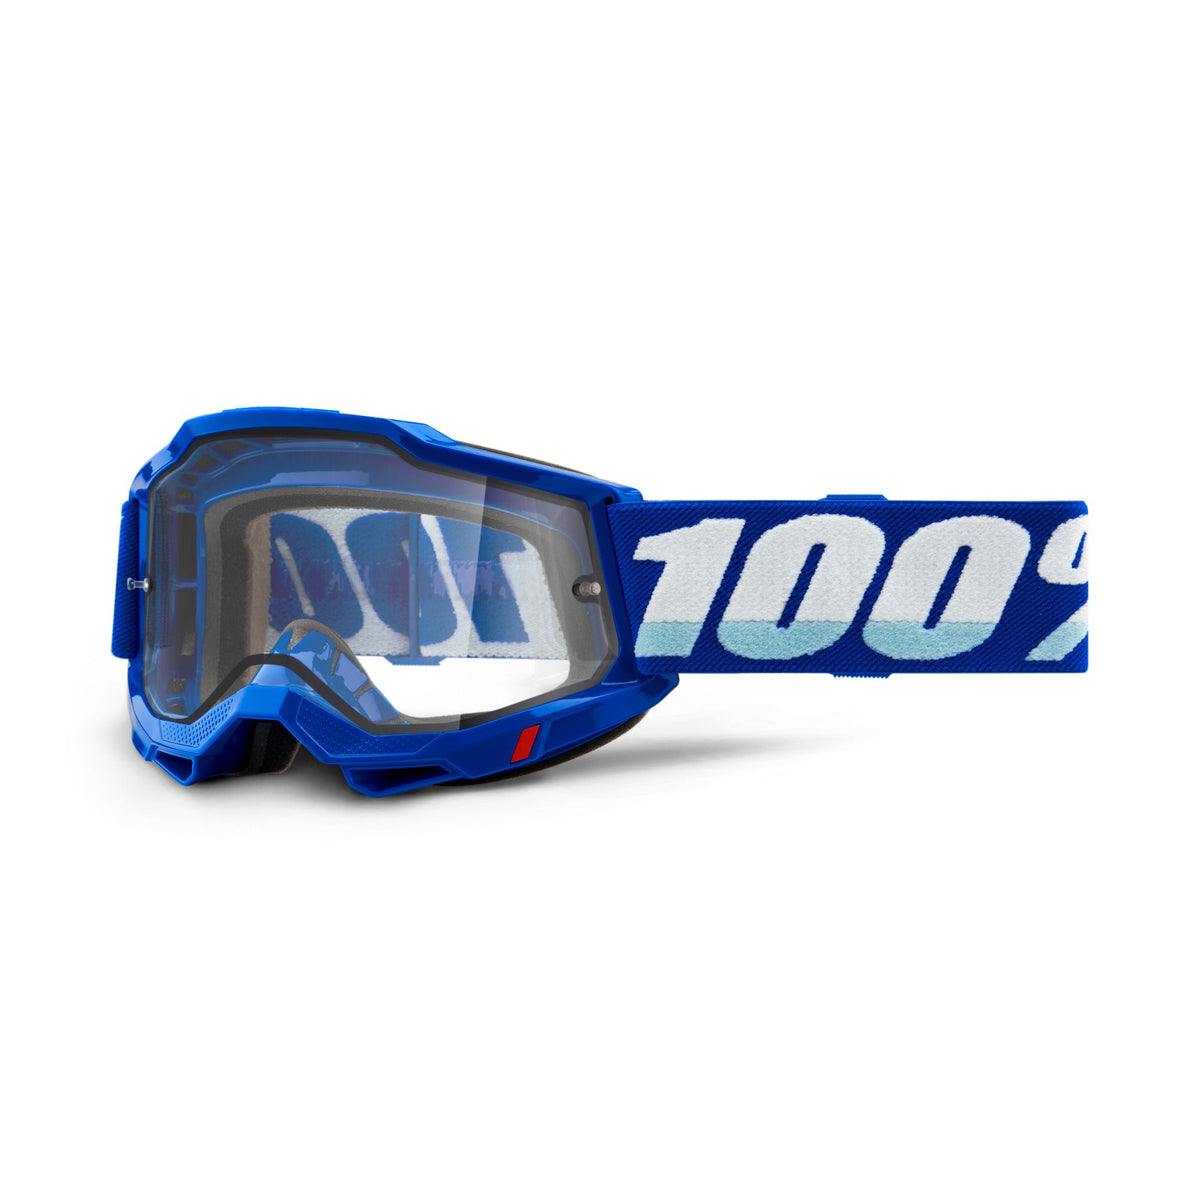 100% Accuri 2 Enduro MX Goggles 